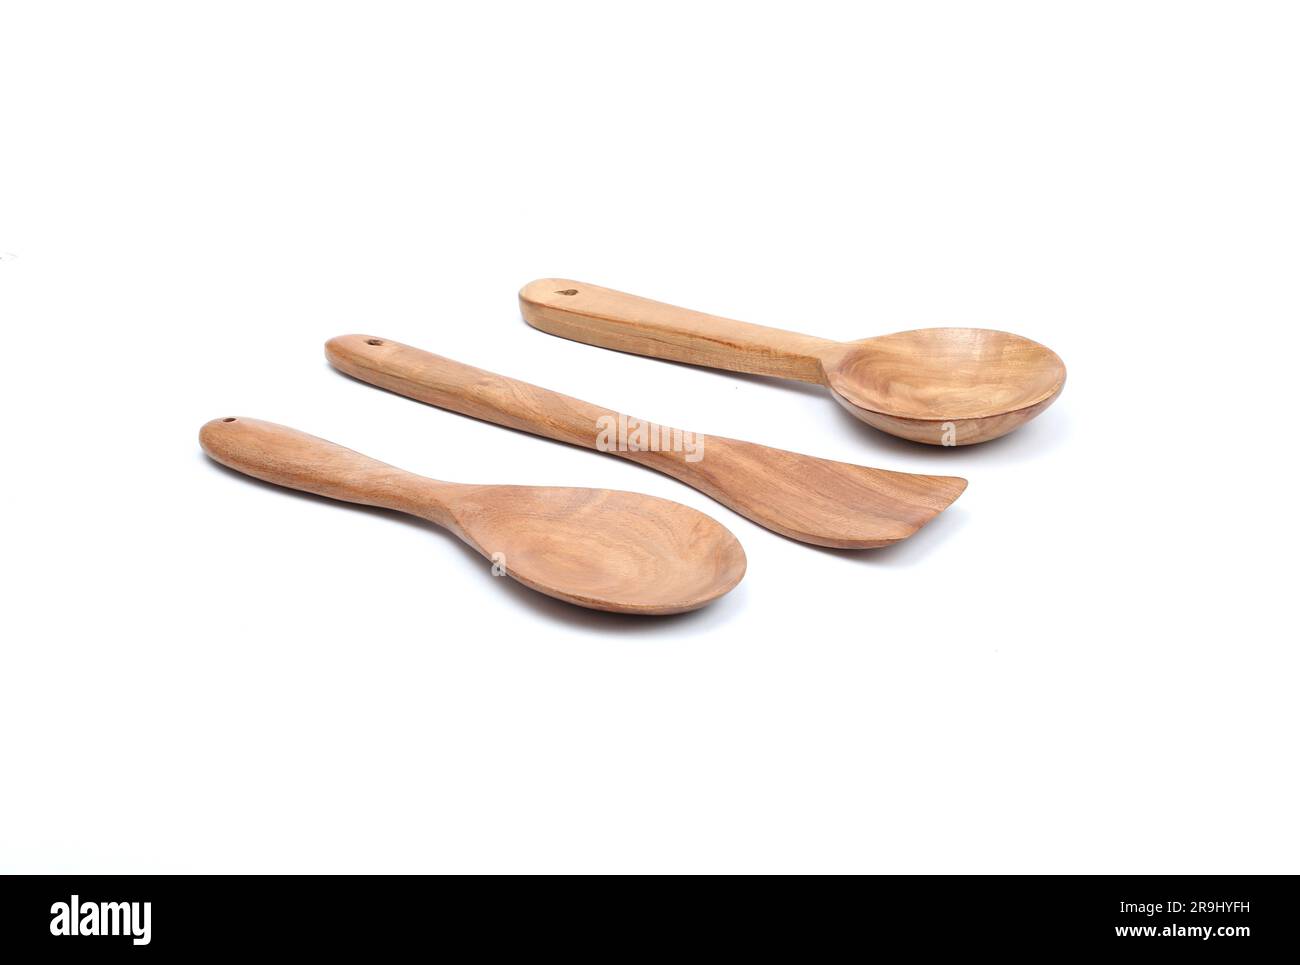 Cucchiai in legno per cucinare, utensili da cucina in legno isolati su sfondo bianco Foto Stock